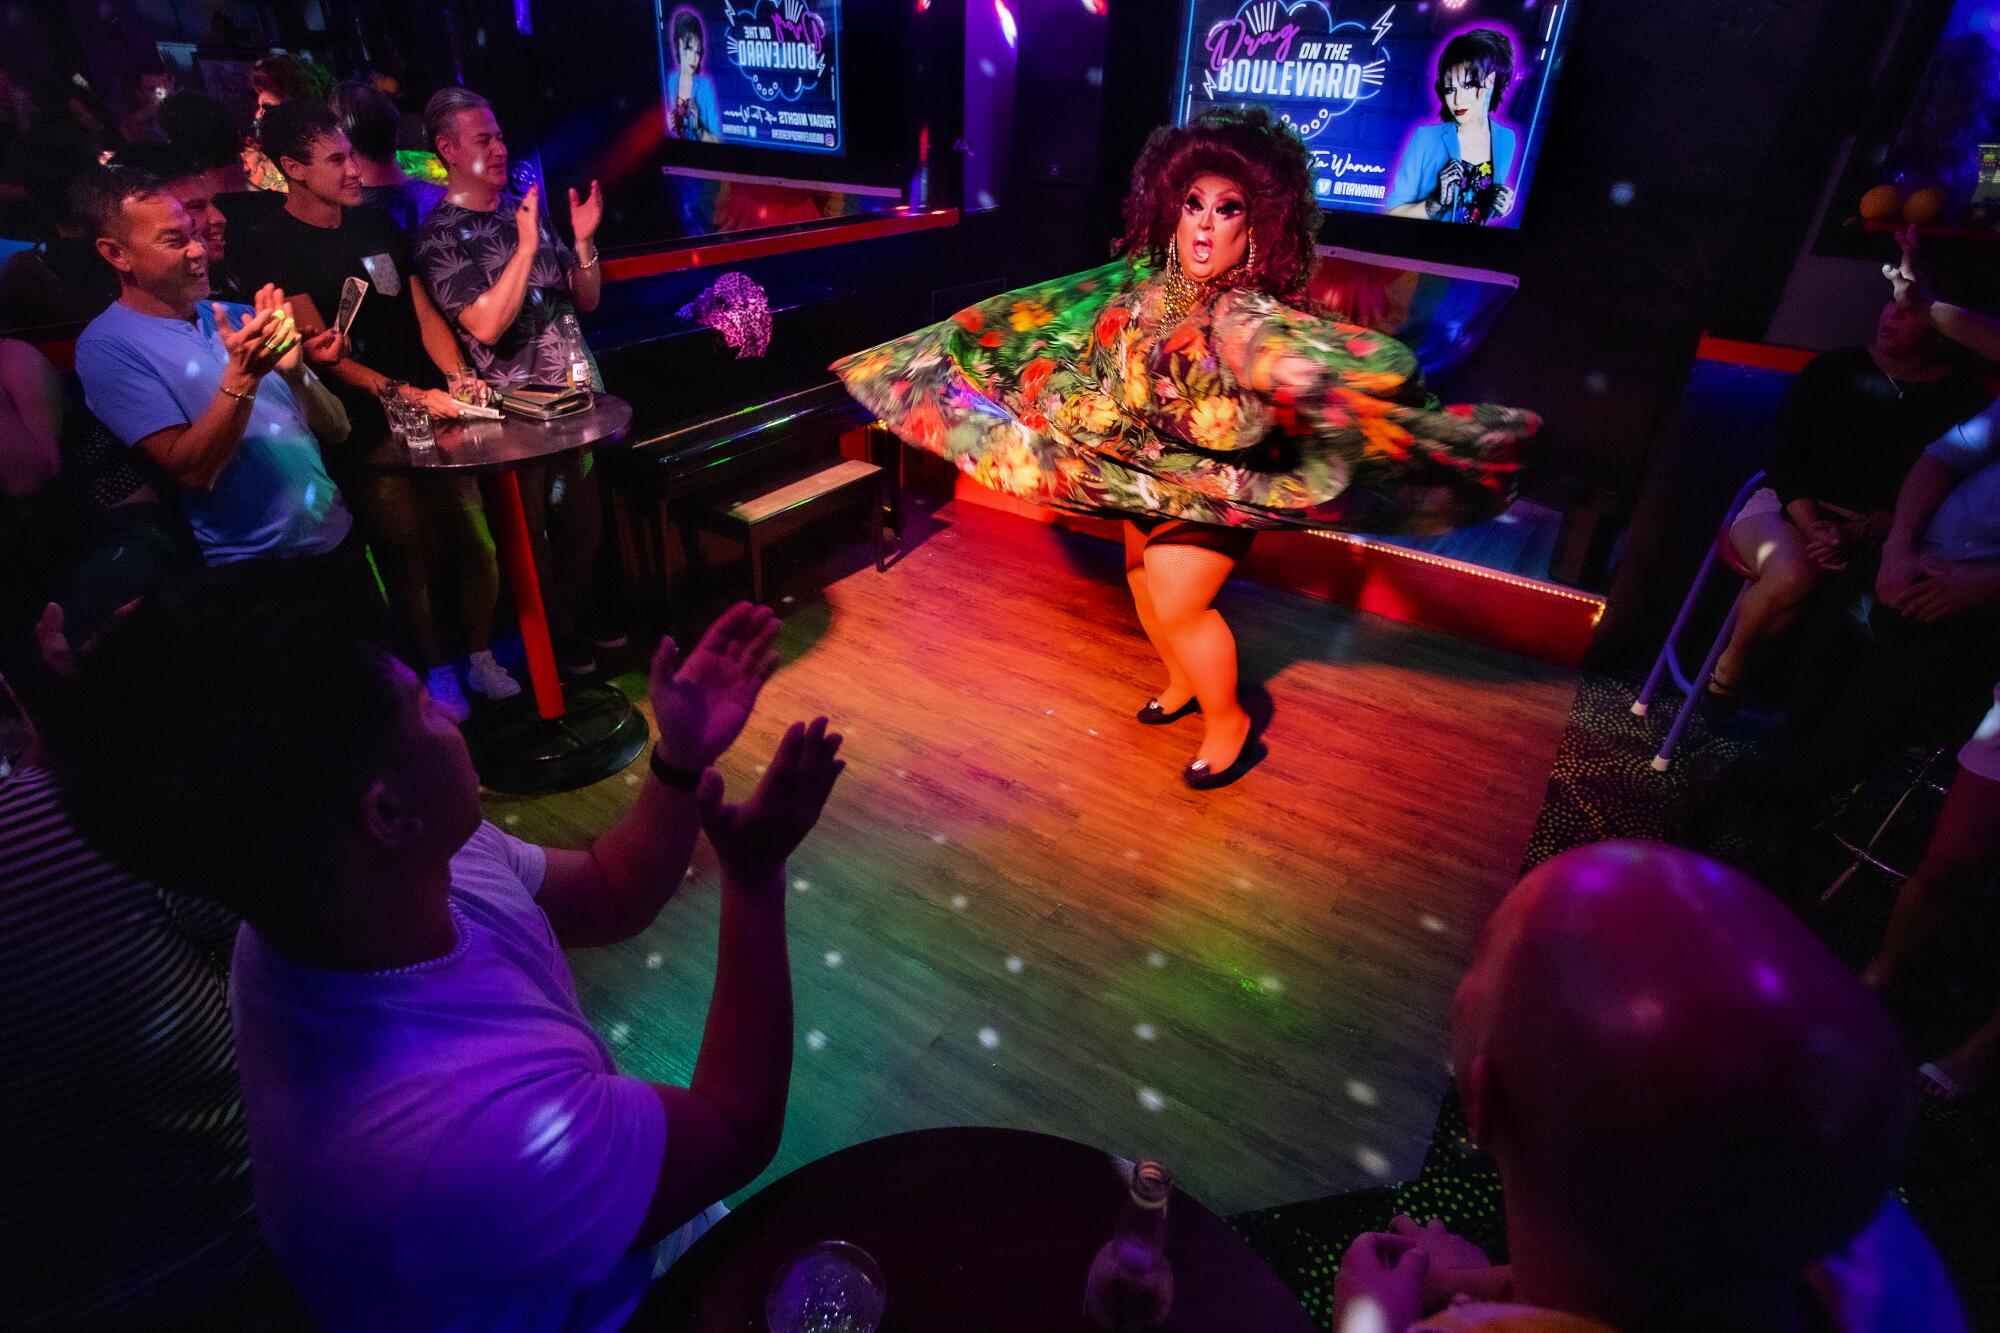 Pasadena gay bar reopens with drag, karaoke after COVID woes - Los